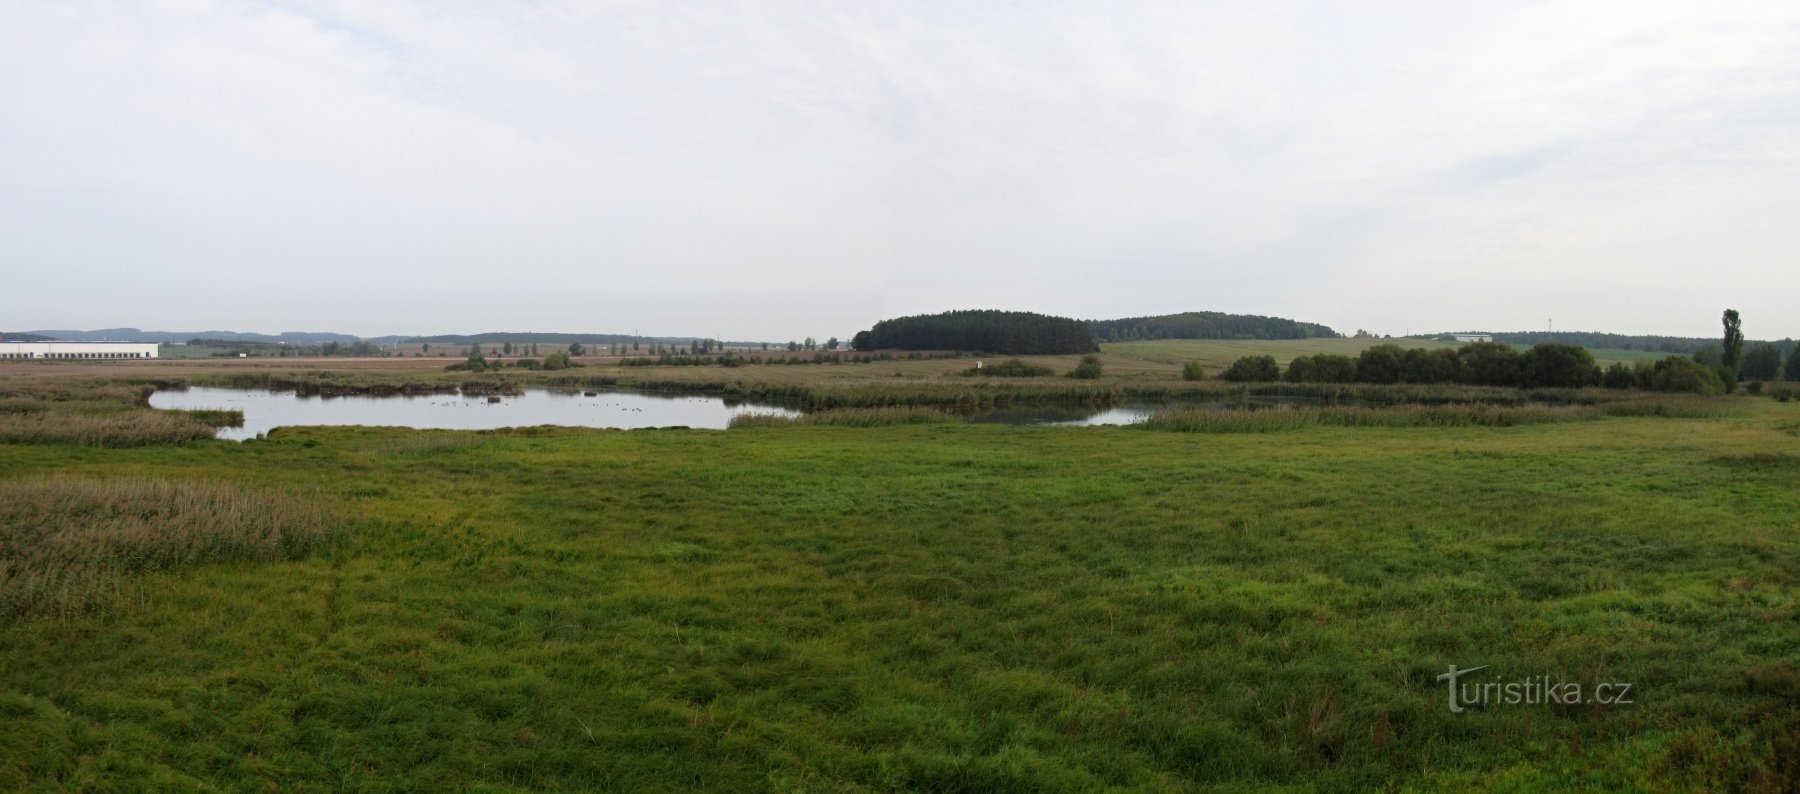 Nový Rybník (Úherce) - természetvédelmi terület és madármegfigyelő